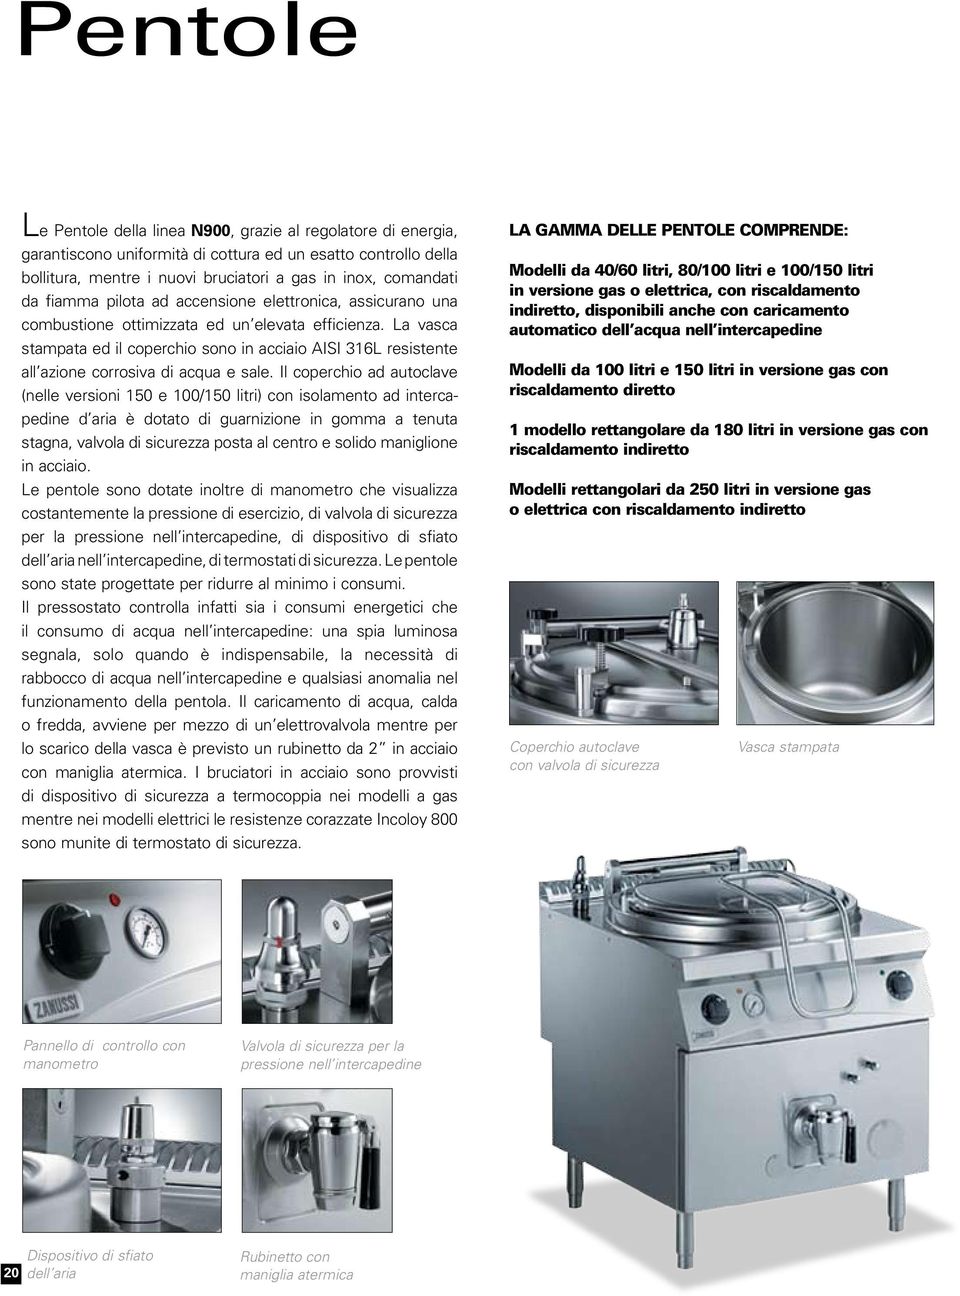 La vasca stampata ed il coperchio sono in acciaio AISI 316L resistente all azione corrosiva di acqua e sale.